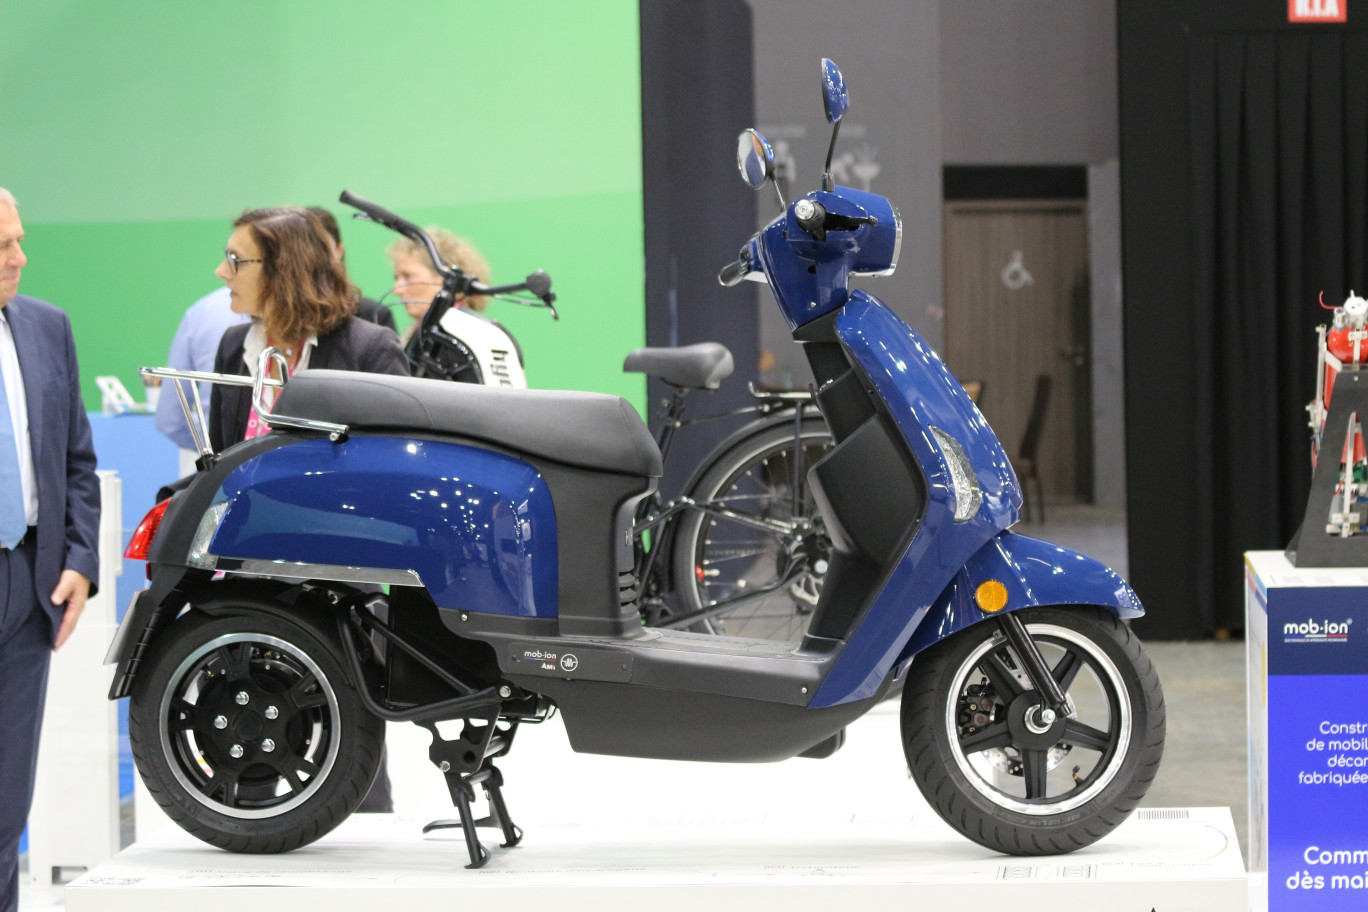 Fabriqué à Guise, le scooter électrique AM1 présenté au Mondial de l’automobile